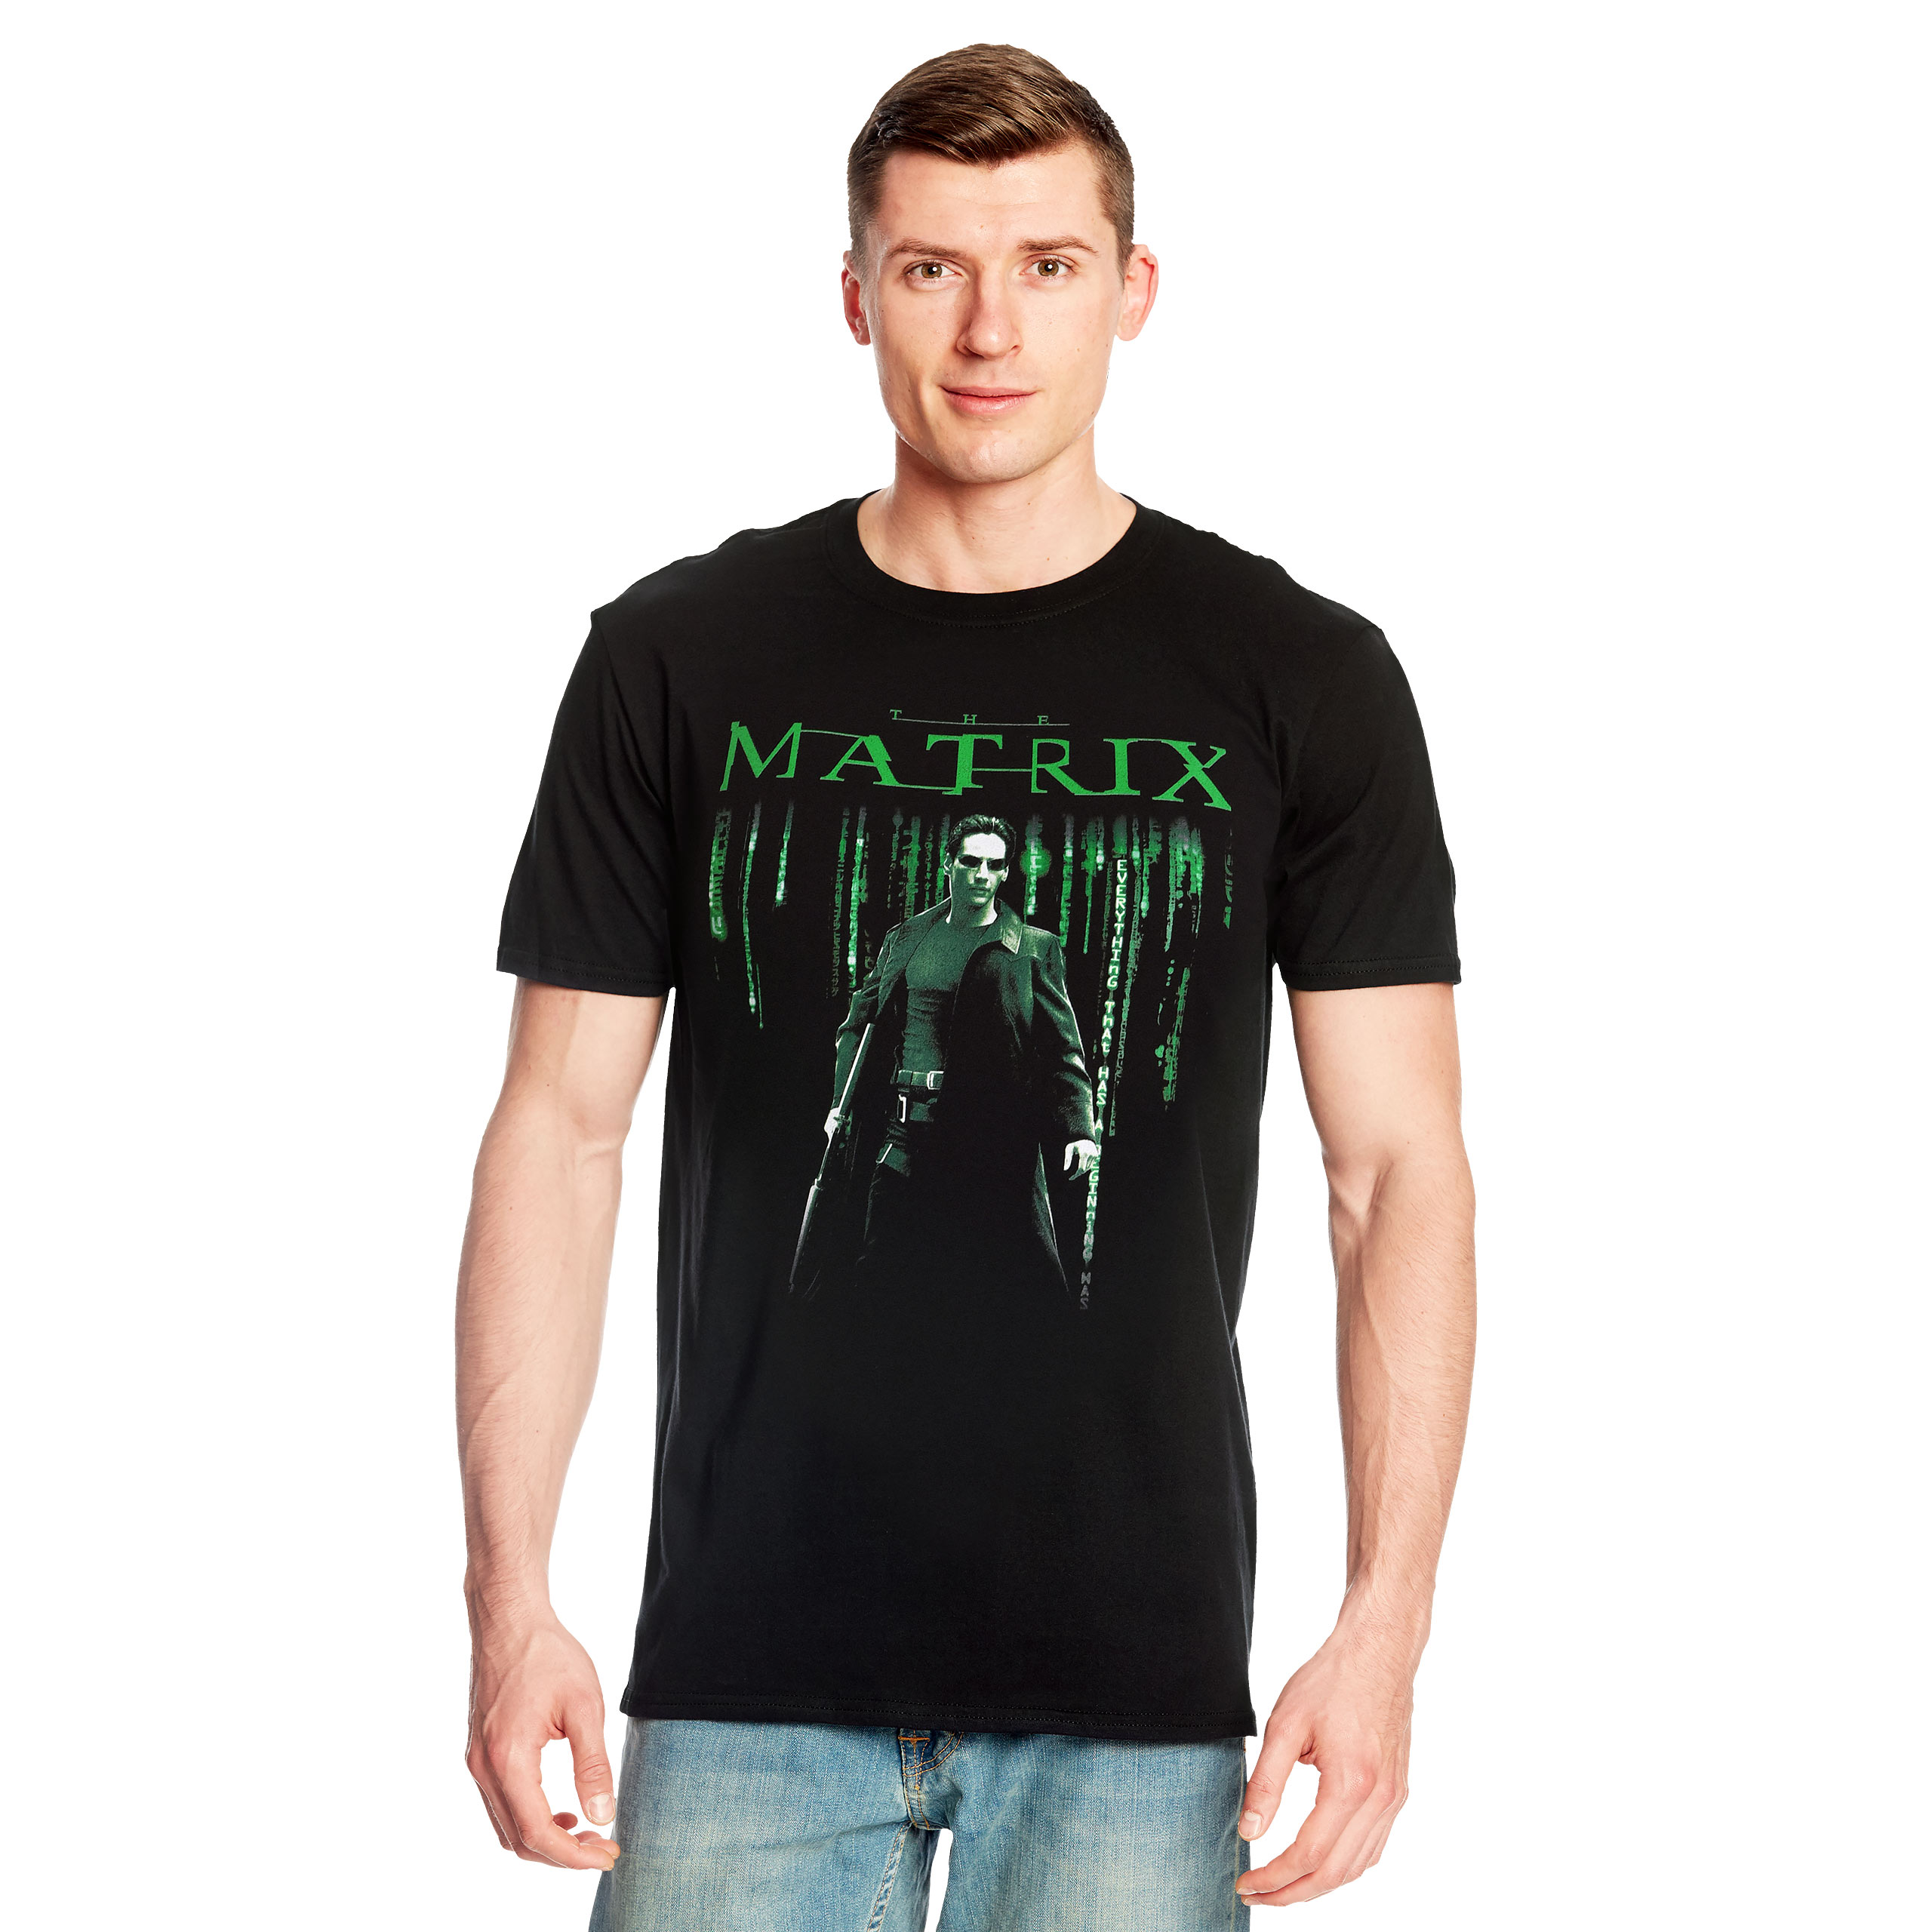 Matrix - Neo T-Shirt schwarz